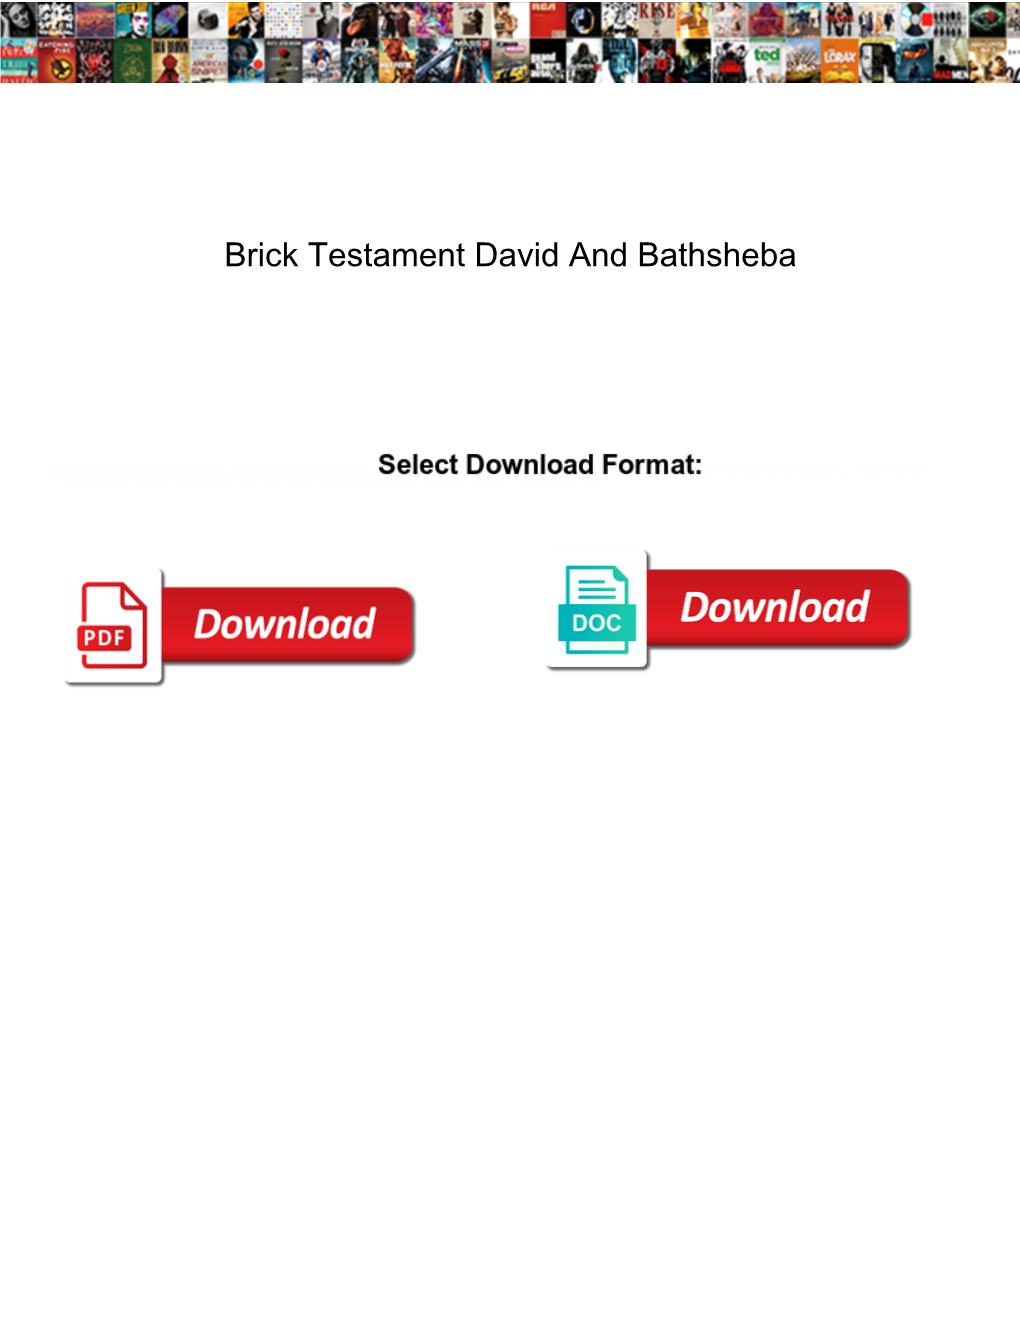 Brick Testament David and Bathsheba